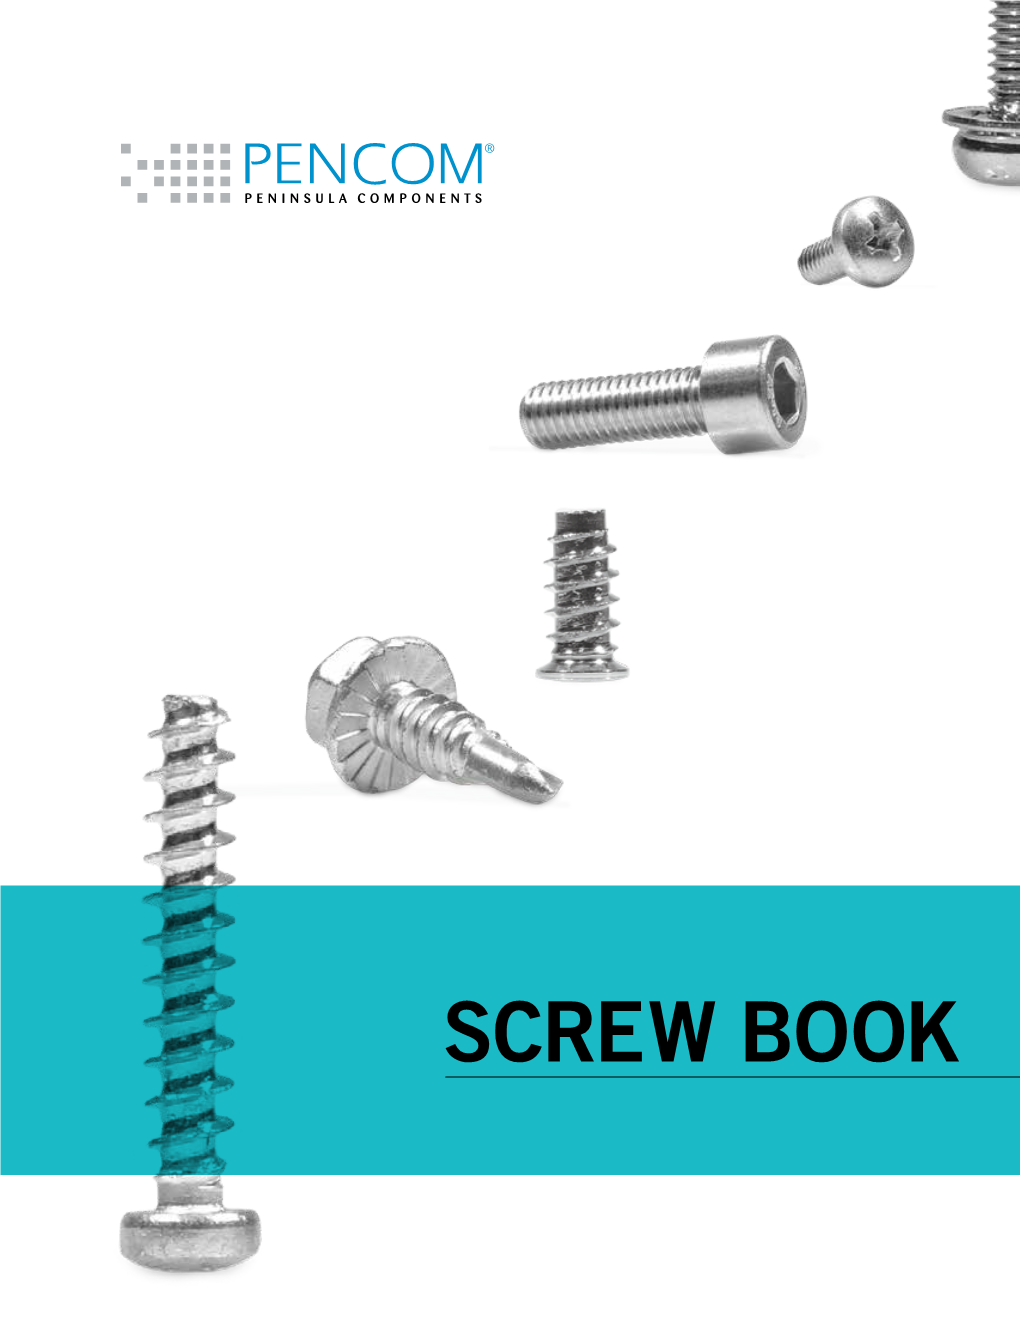 Download Pencoms Screw Book